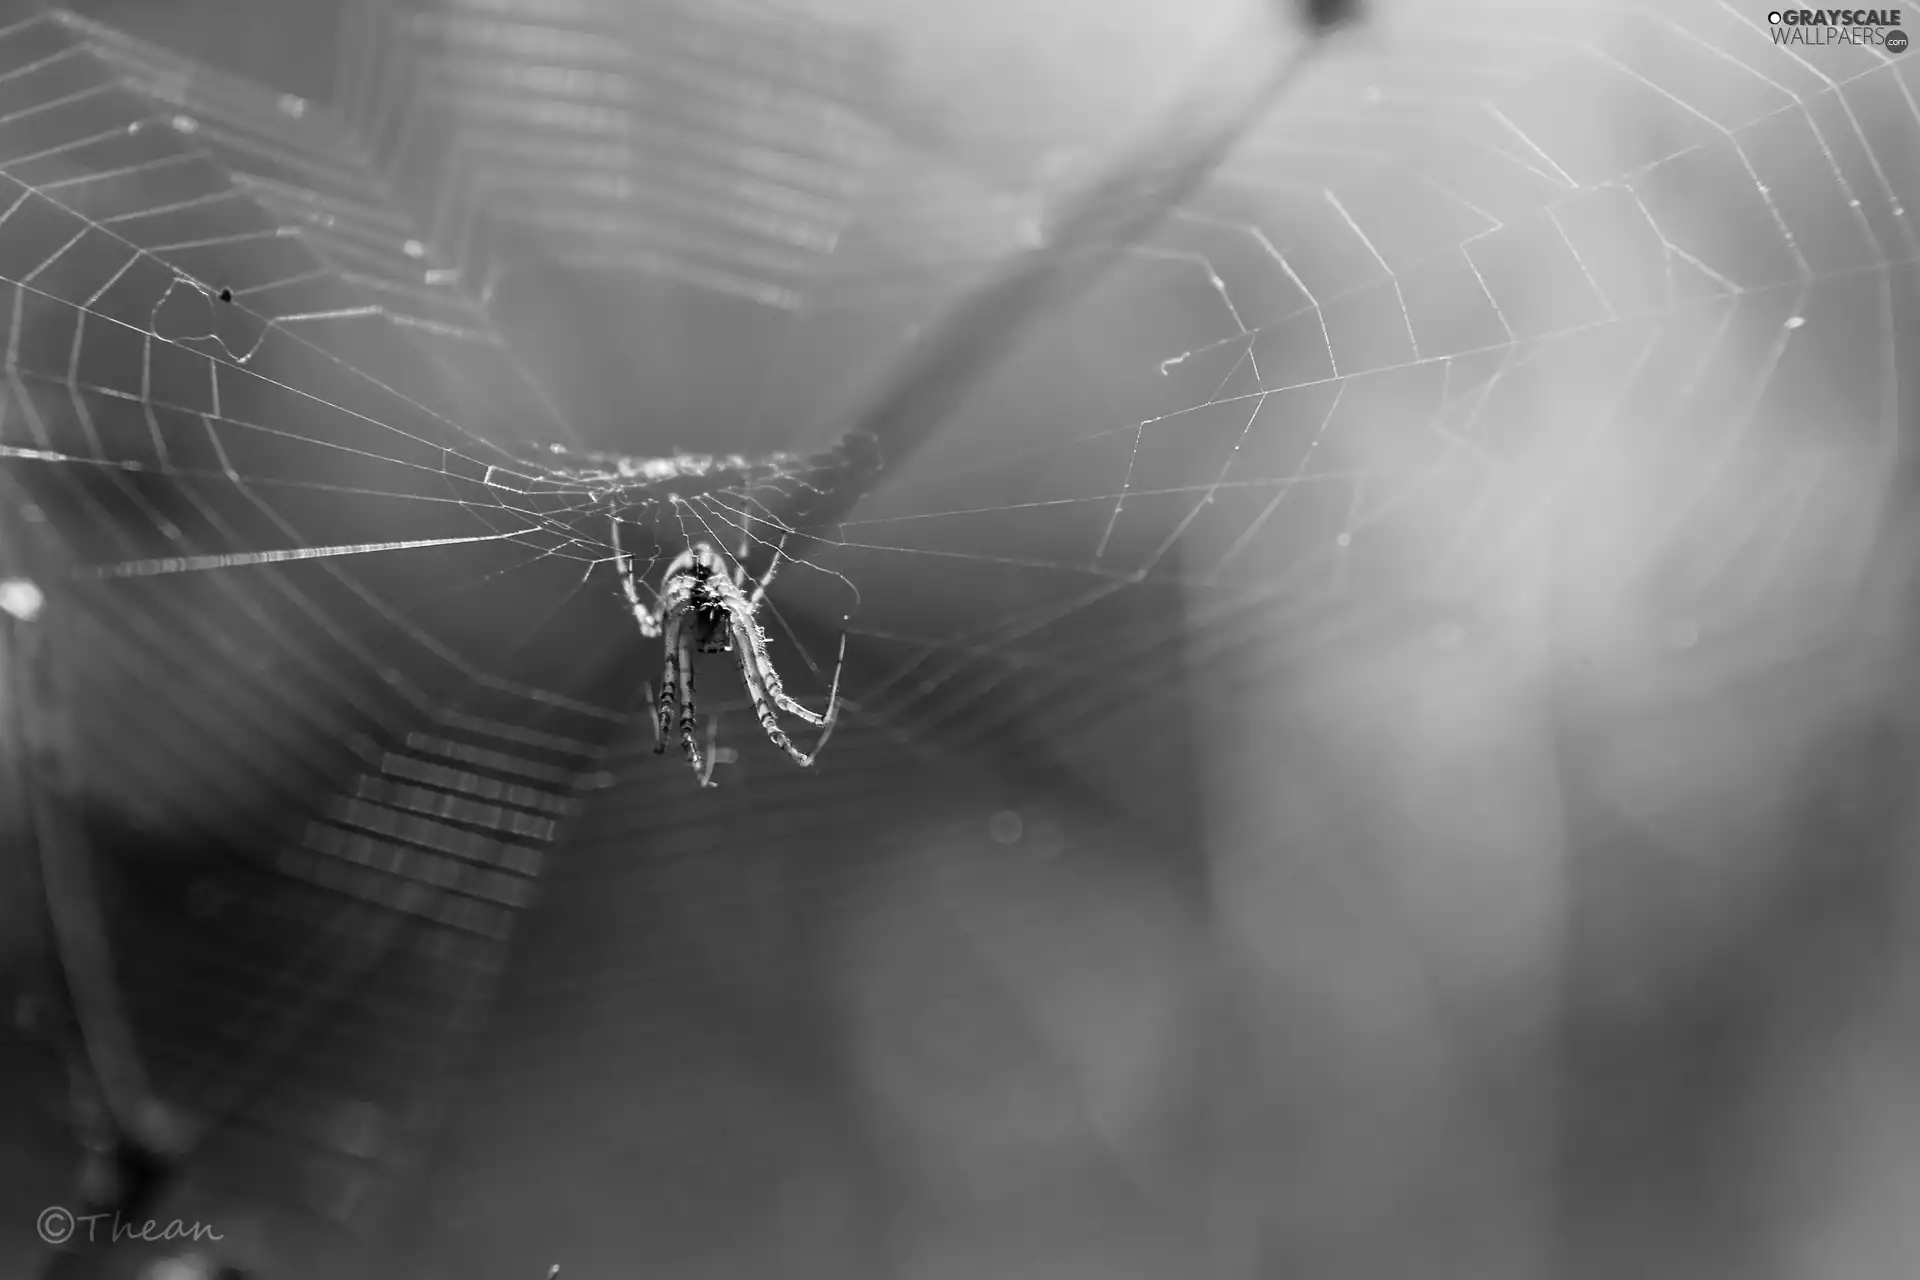 Spider, Web, net, trestle